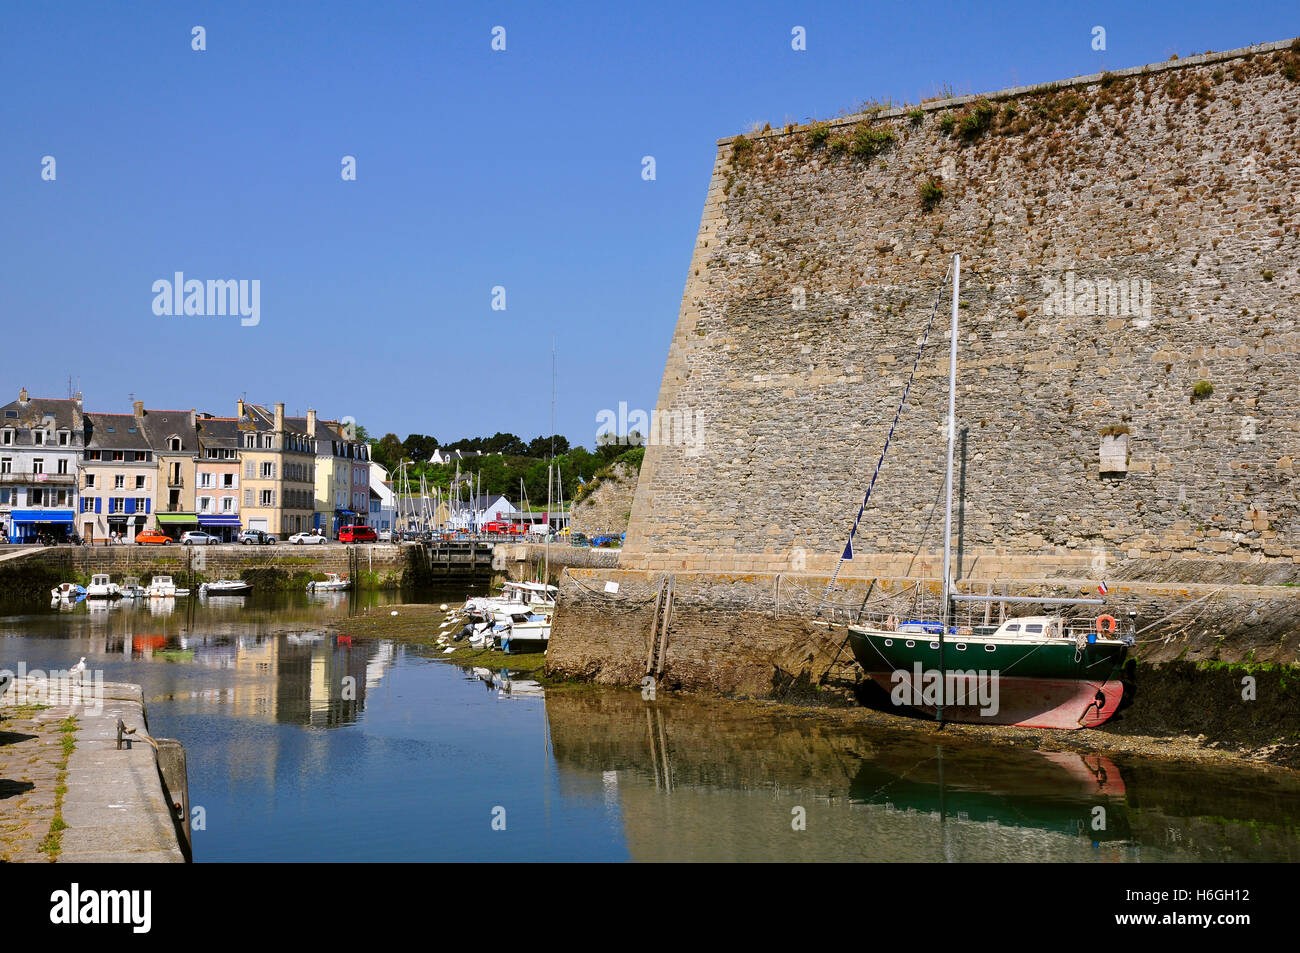 Hafen und Zitadelle Vauban von Le Palais am Belle Ile in Frankreich. Departement Morbihan in der Bretagne im Nordwesten Frankreichs Stockfoto